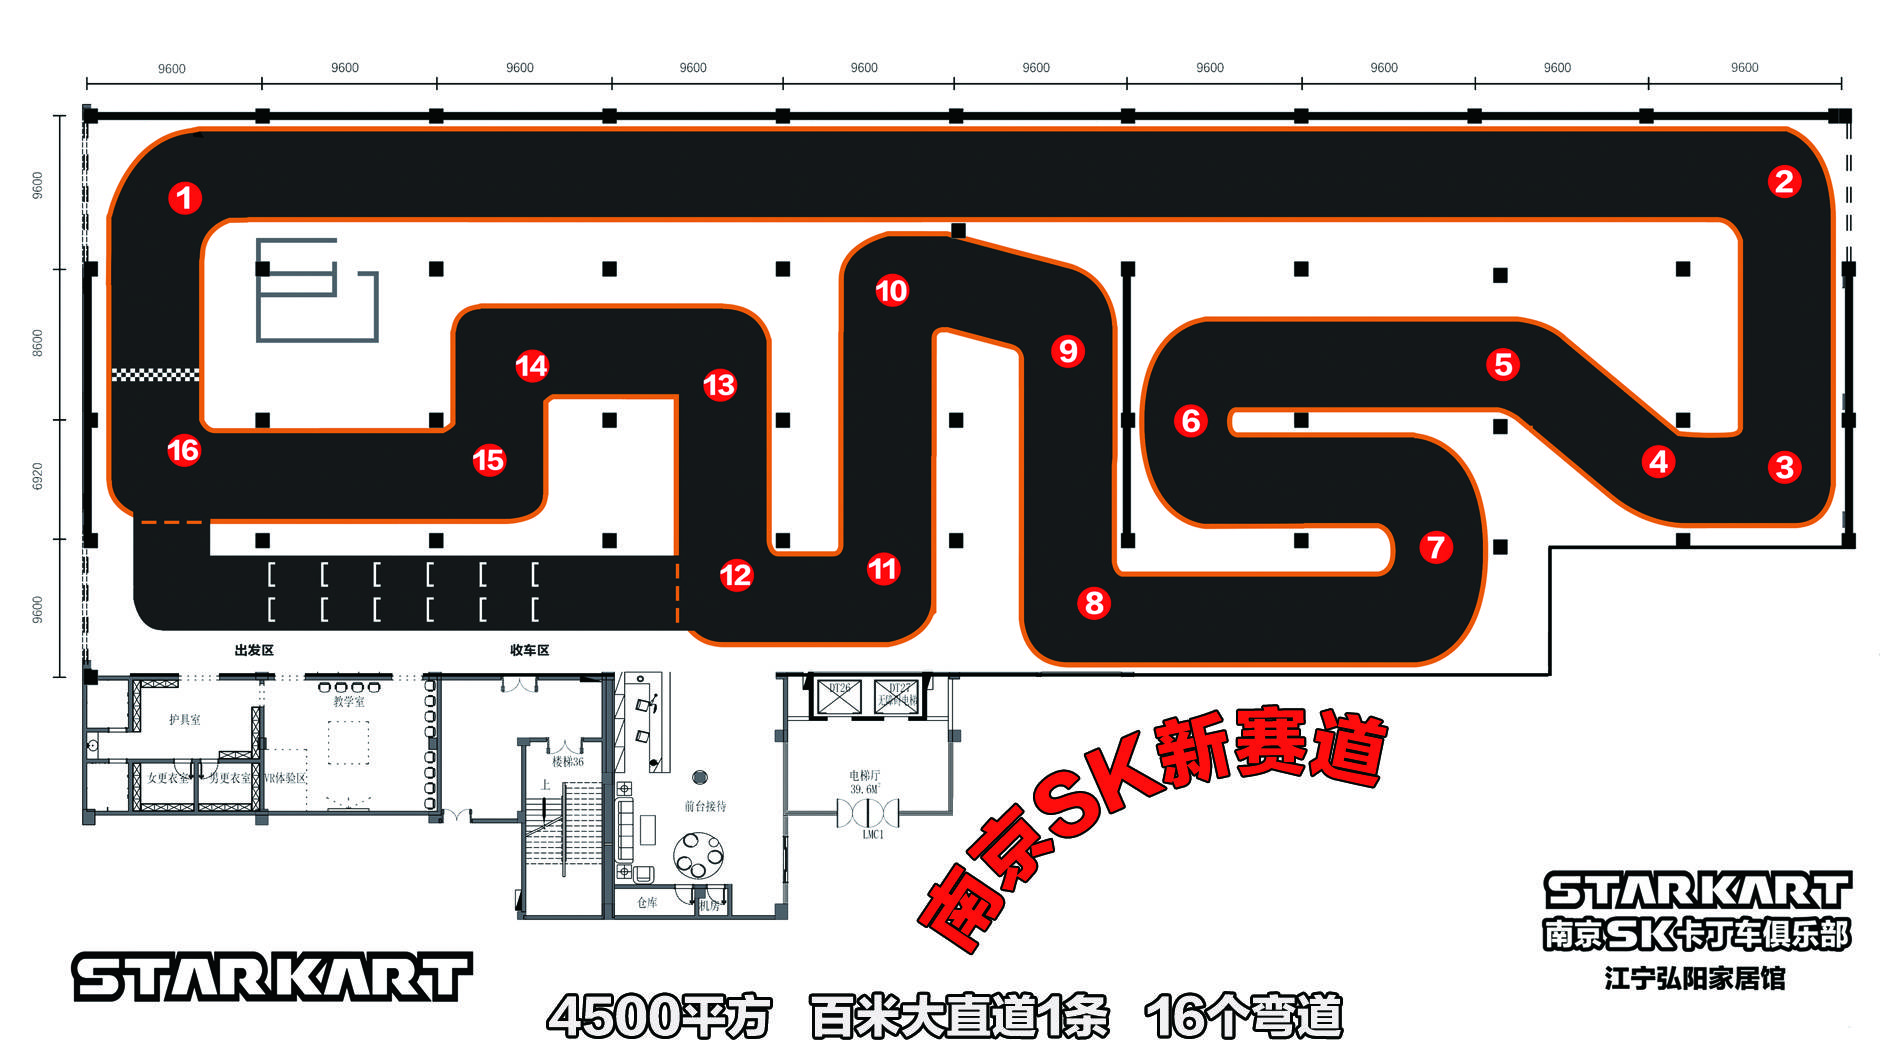 南京sk卡丁车俱乐部赛道 卡丁车赛道设计